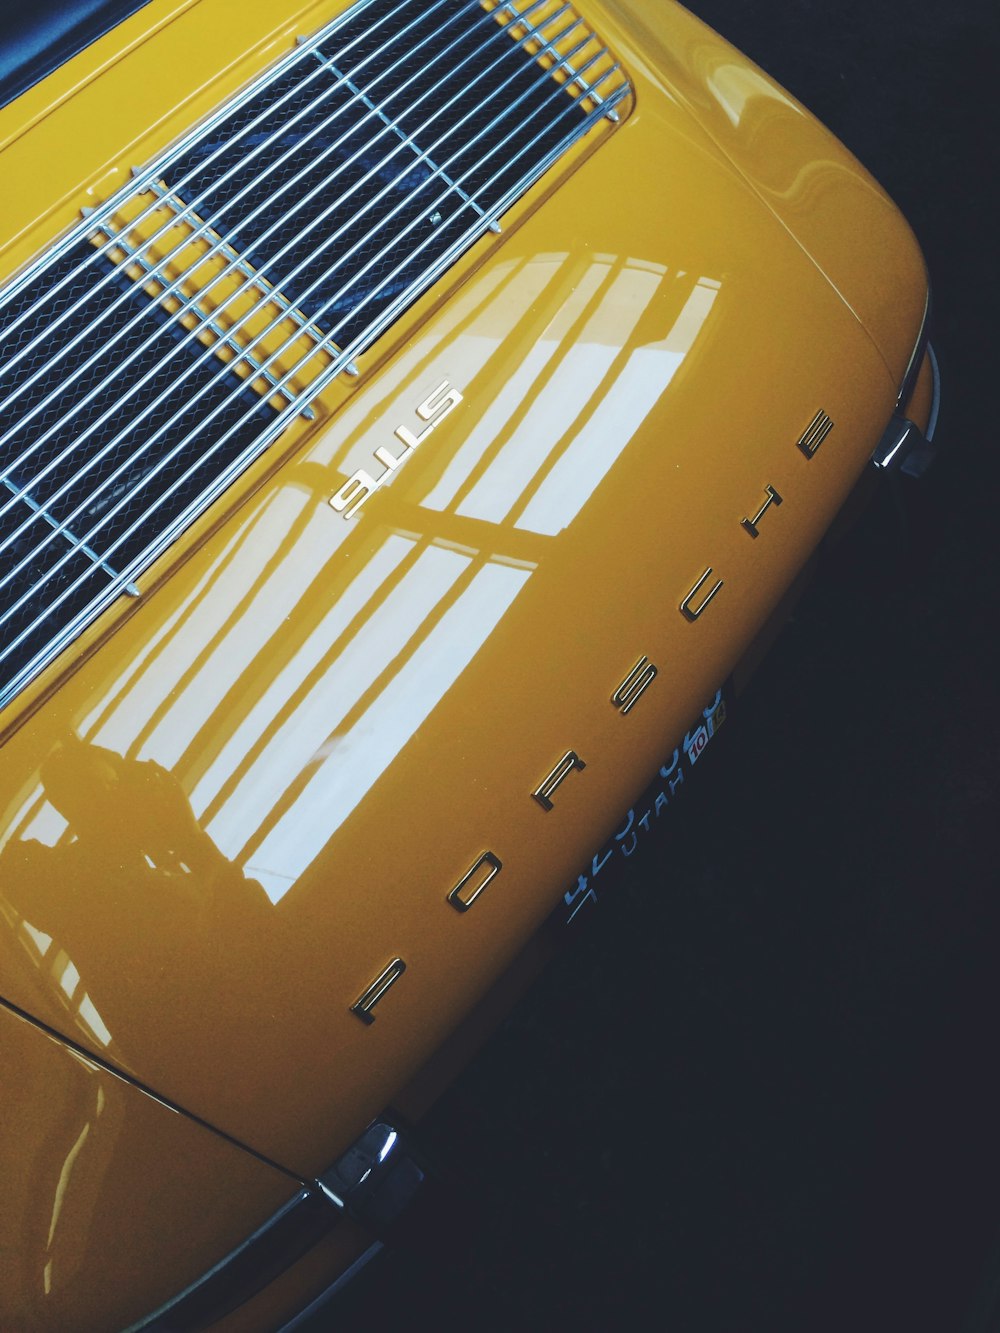 Vehículo Porsche amarillo y negro